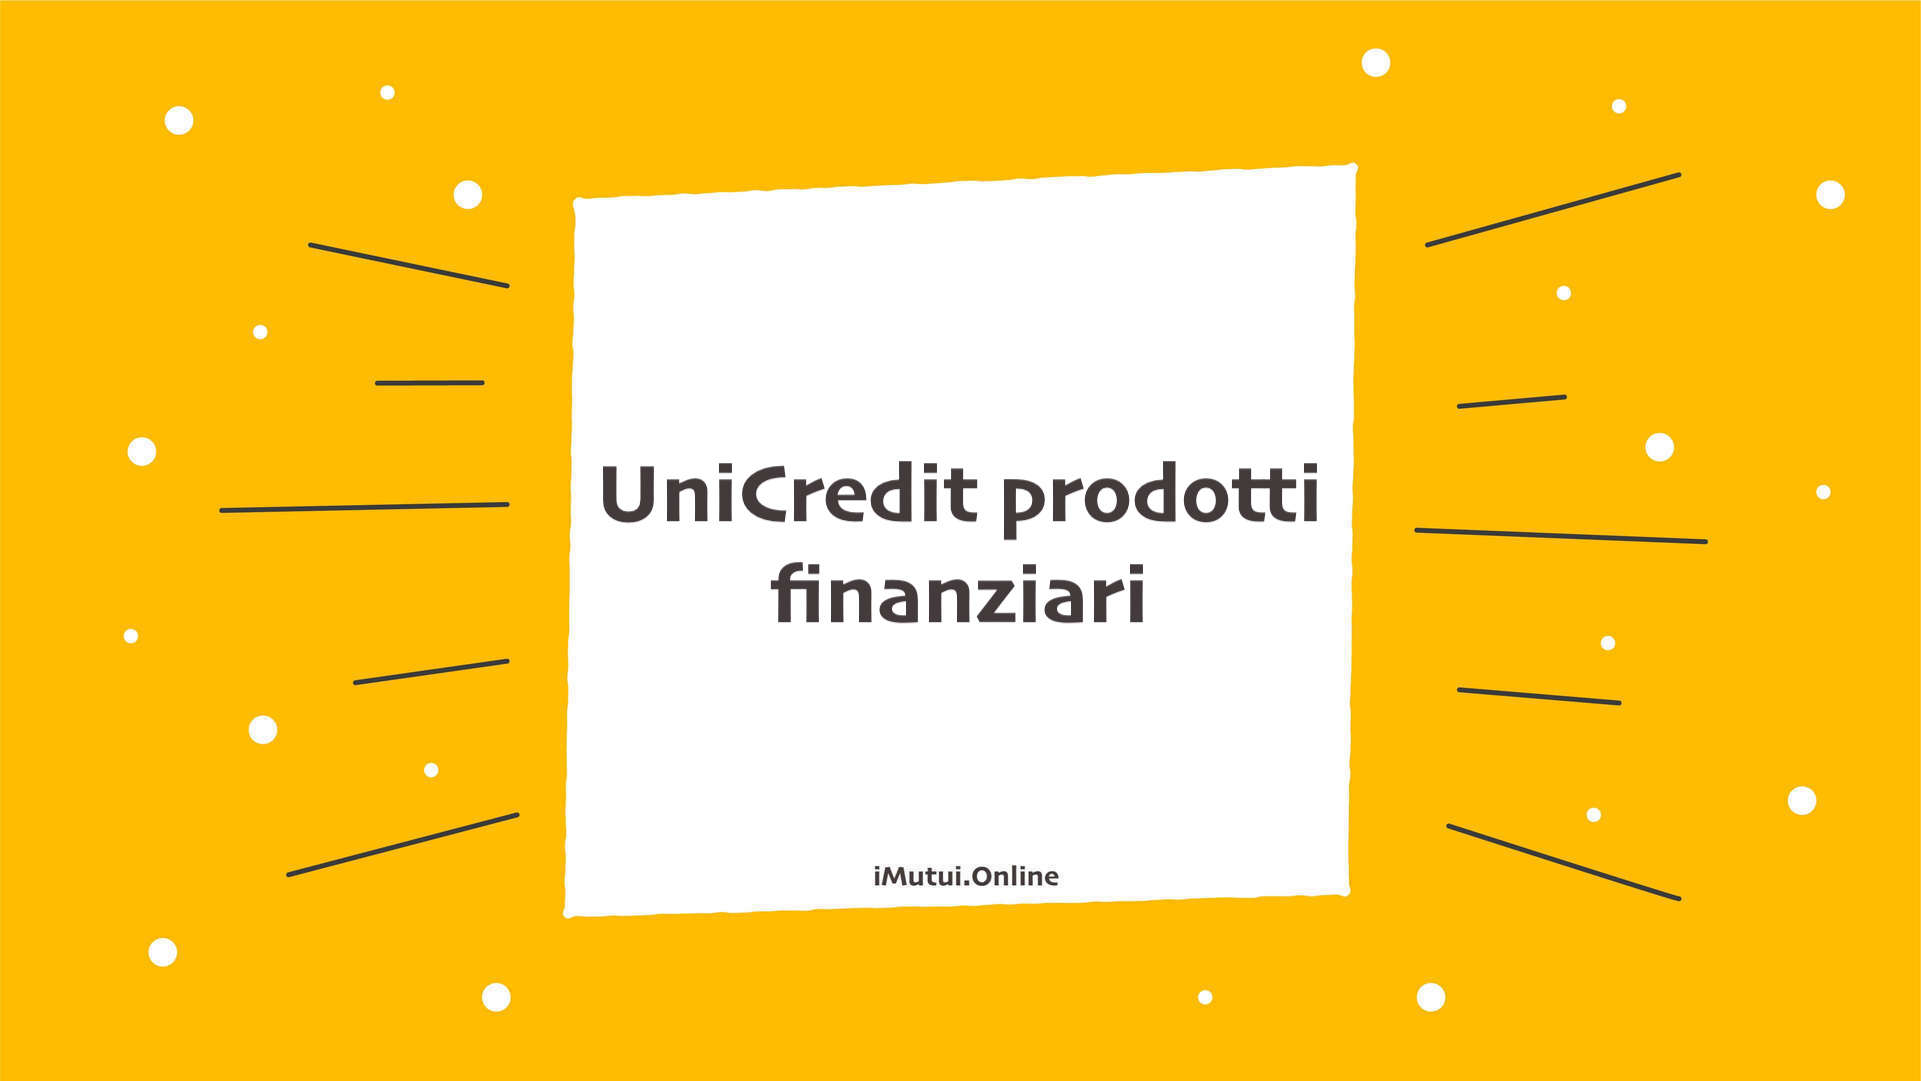 UniCredit prodotti finanziari